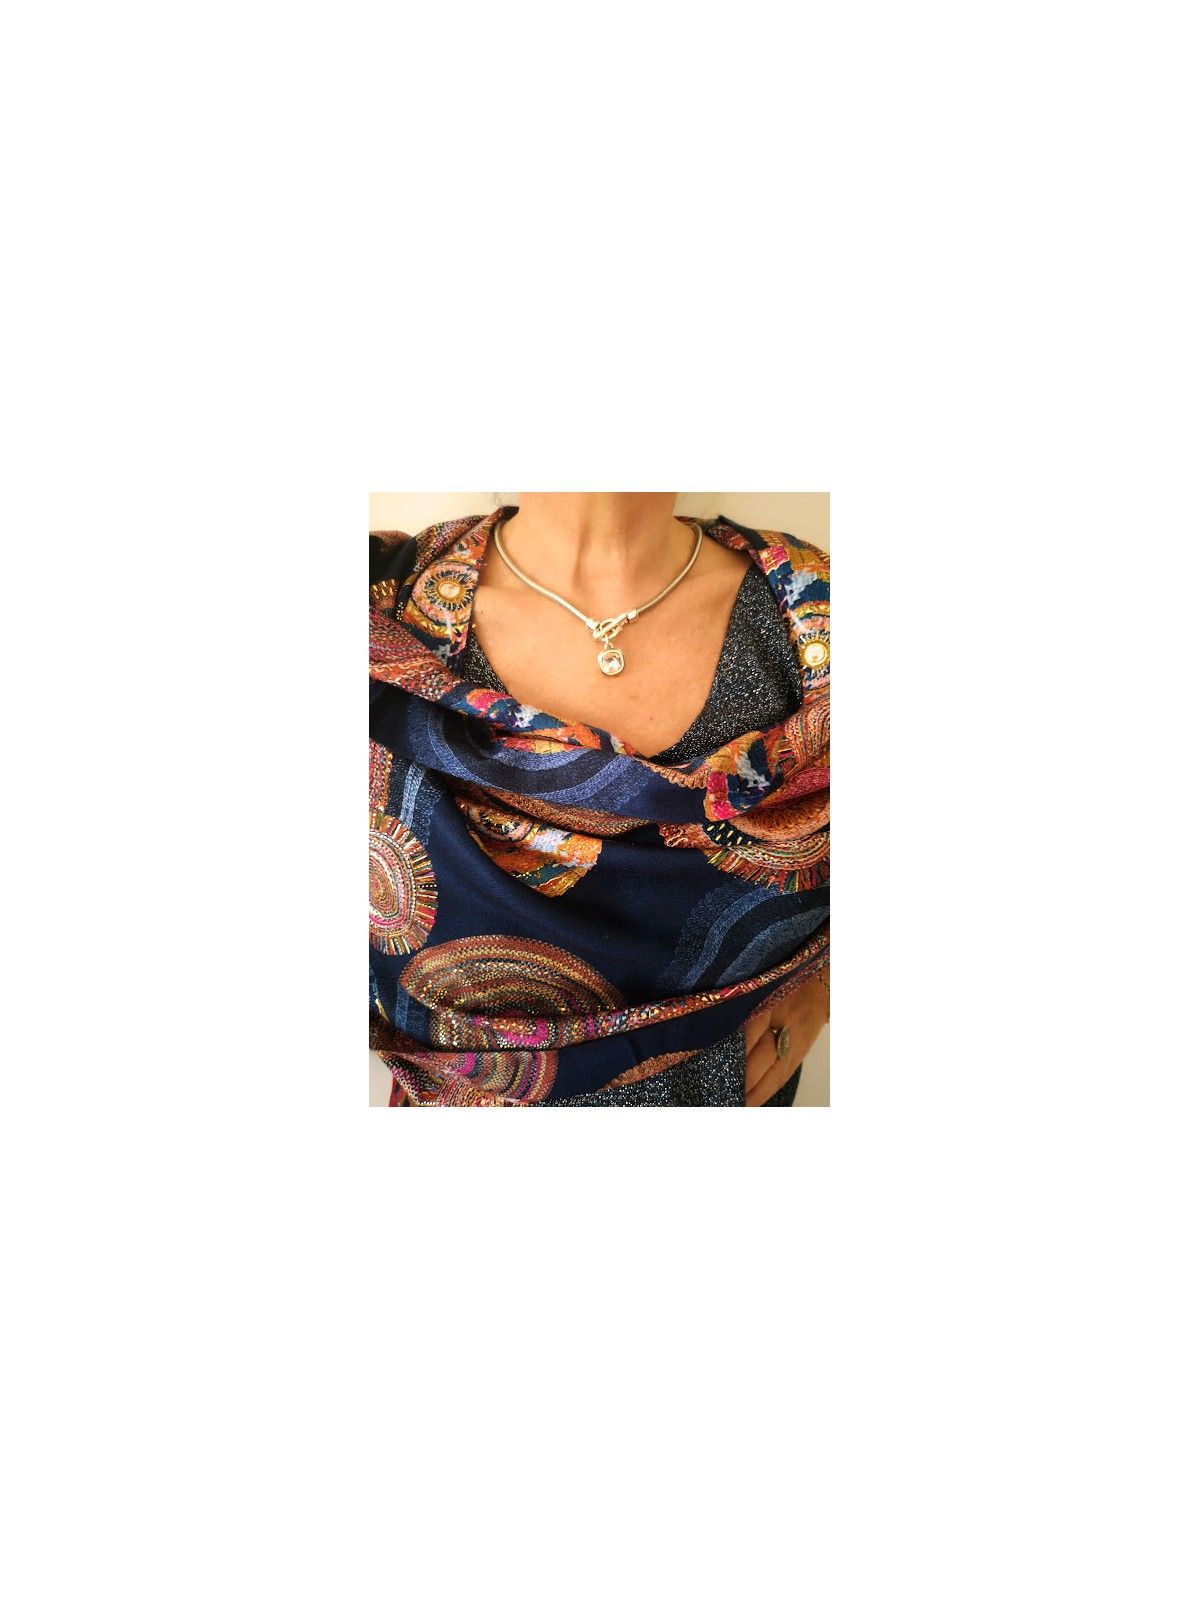 Foulard doré orange et bleu l 3 vue rapprochée l Tilleulmenthe mode boutique de vêtements femme en ligne